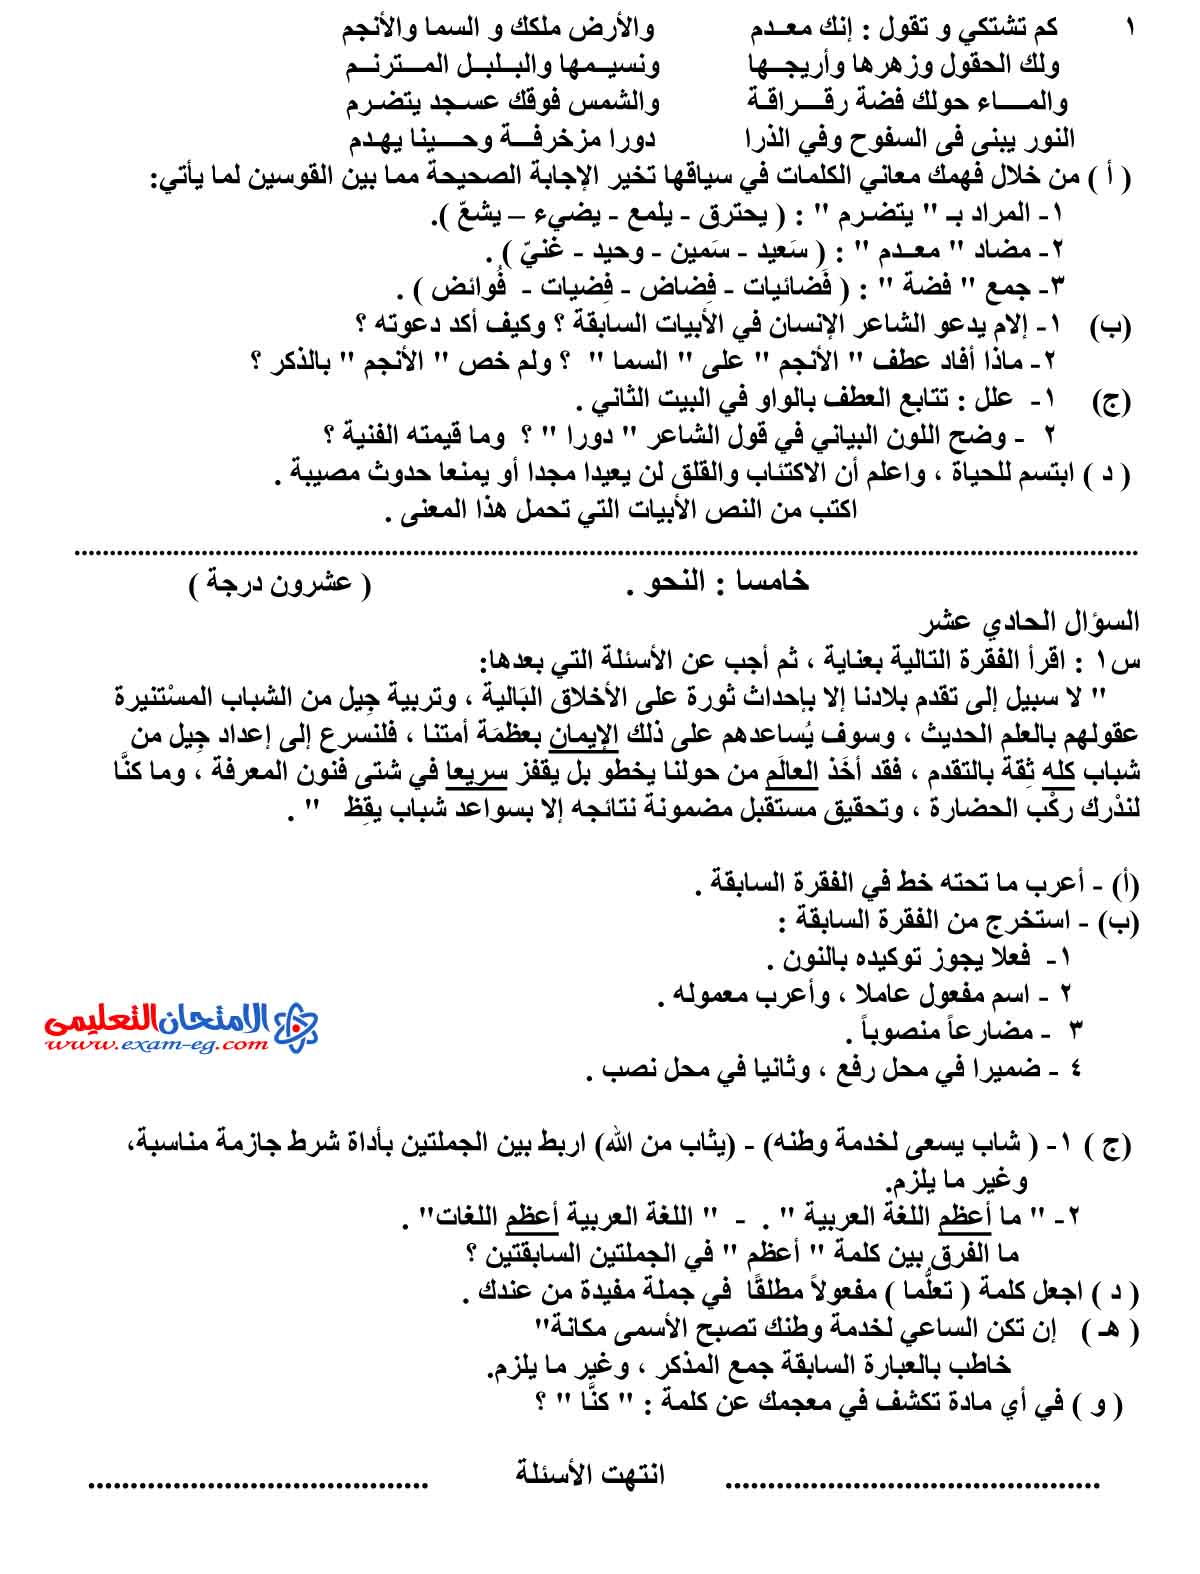 امتحان اللغة العربية 3 - مدرسة اون لاين (4)